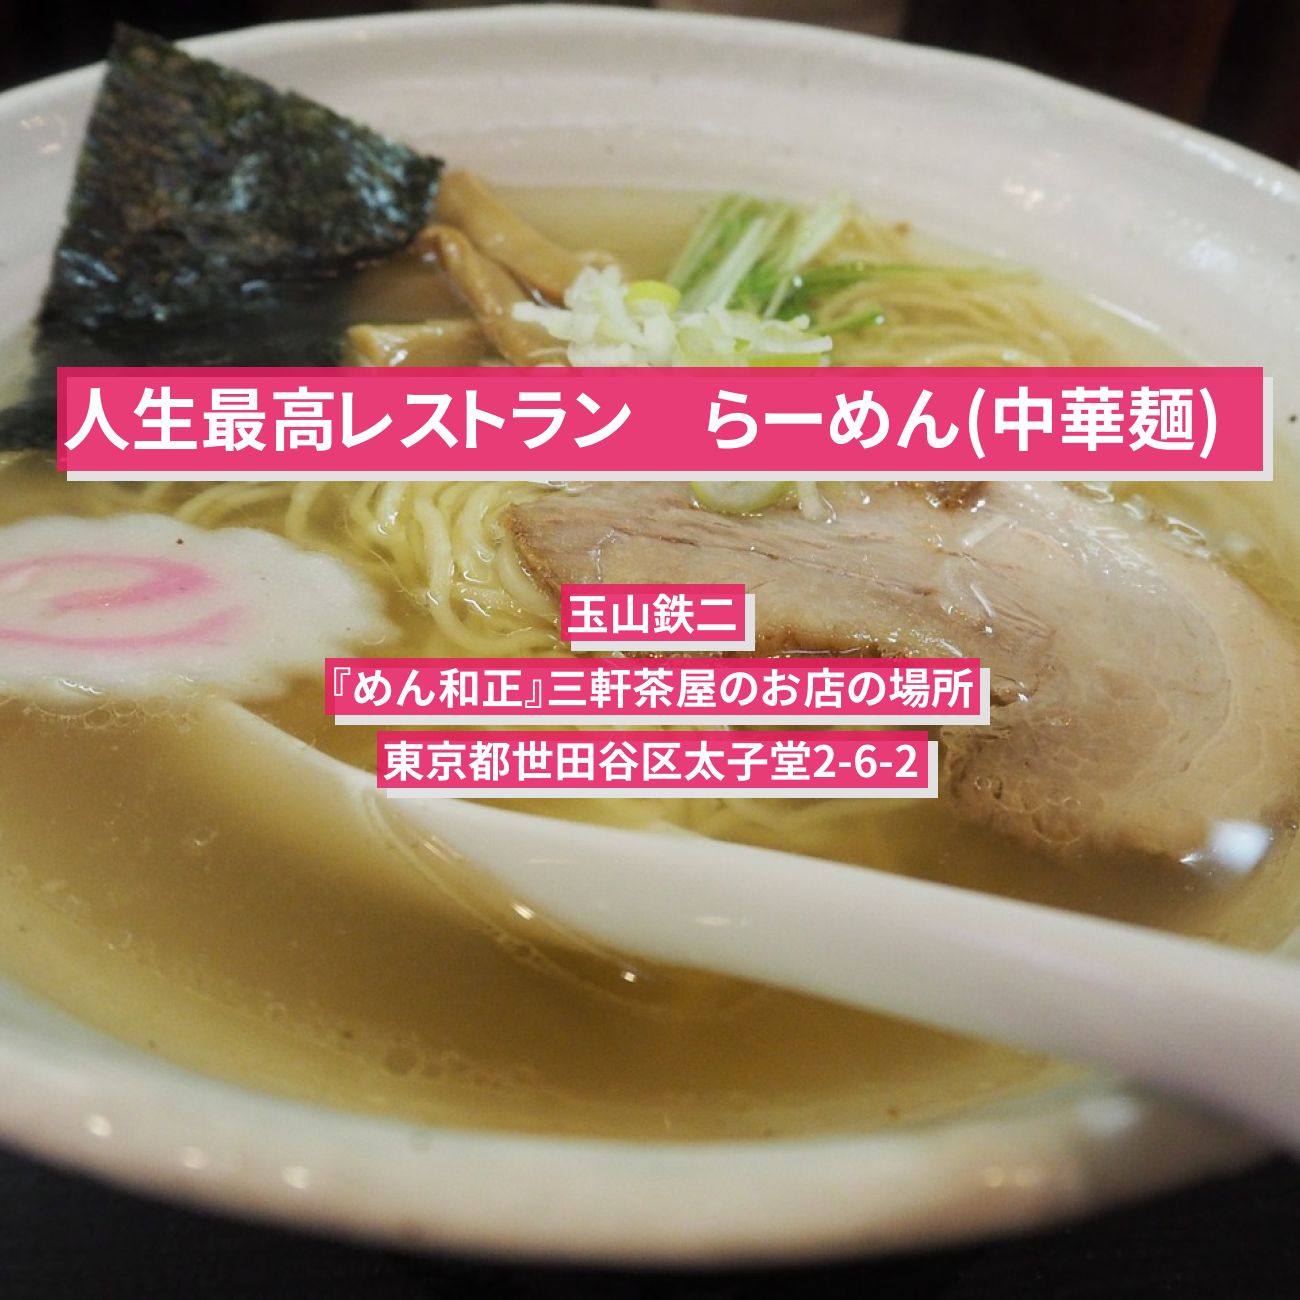 【人生最高レストラン】ラーメン(中華麺) 玉山鉄二『めん和正』三軒茶屋のお店の場所